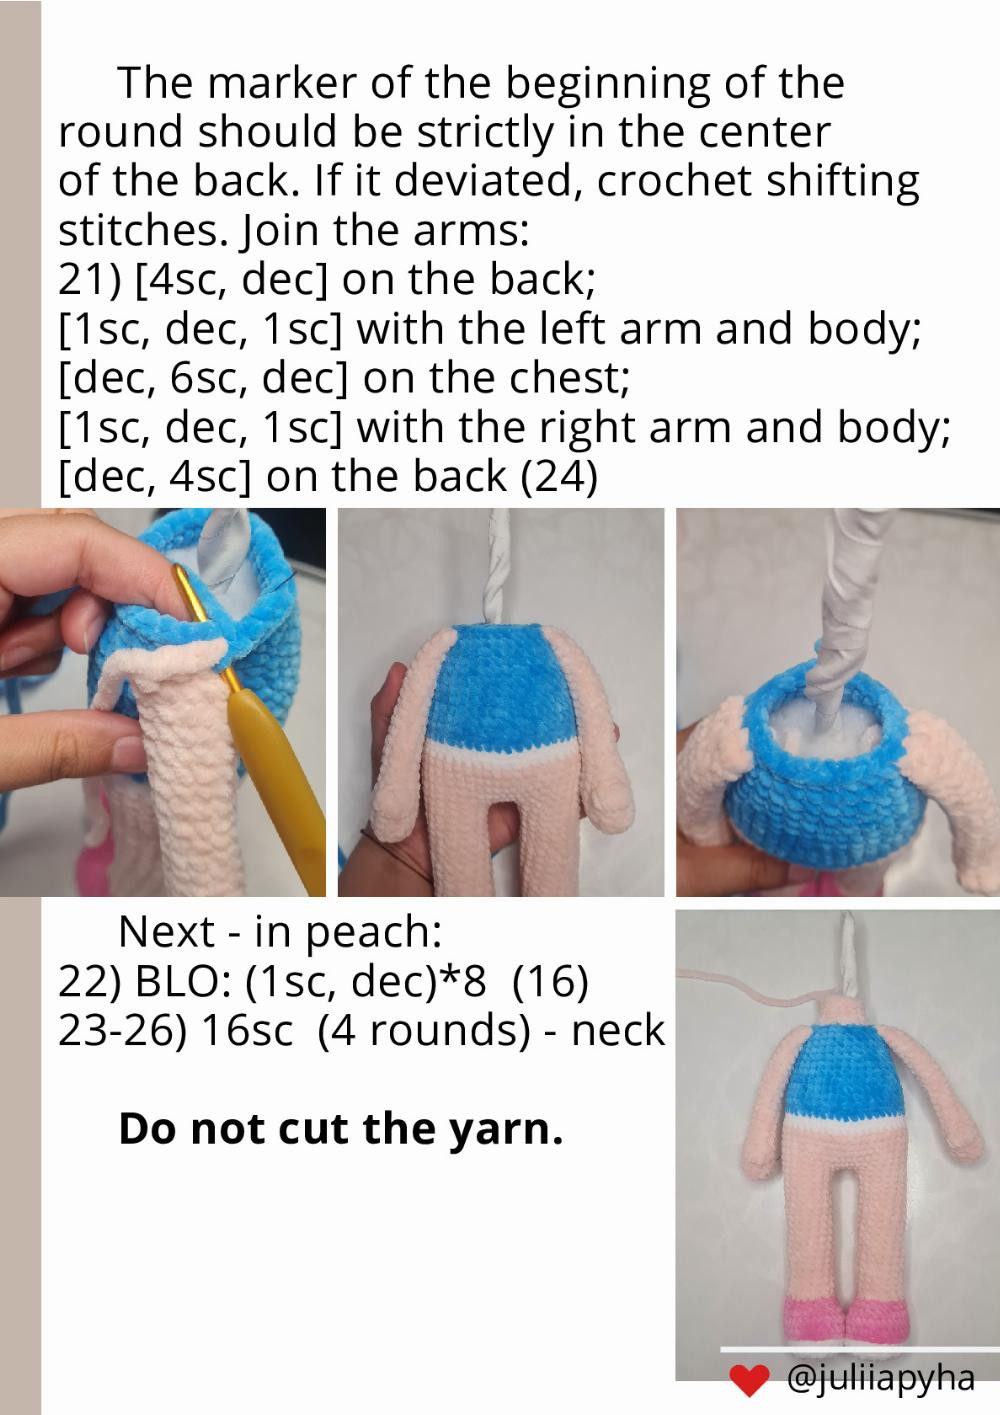 crochet pattern mia doll